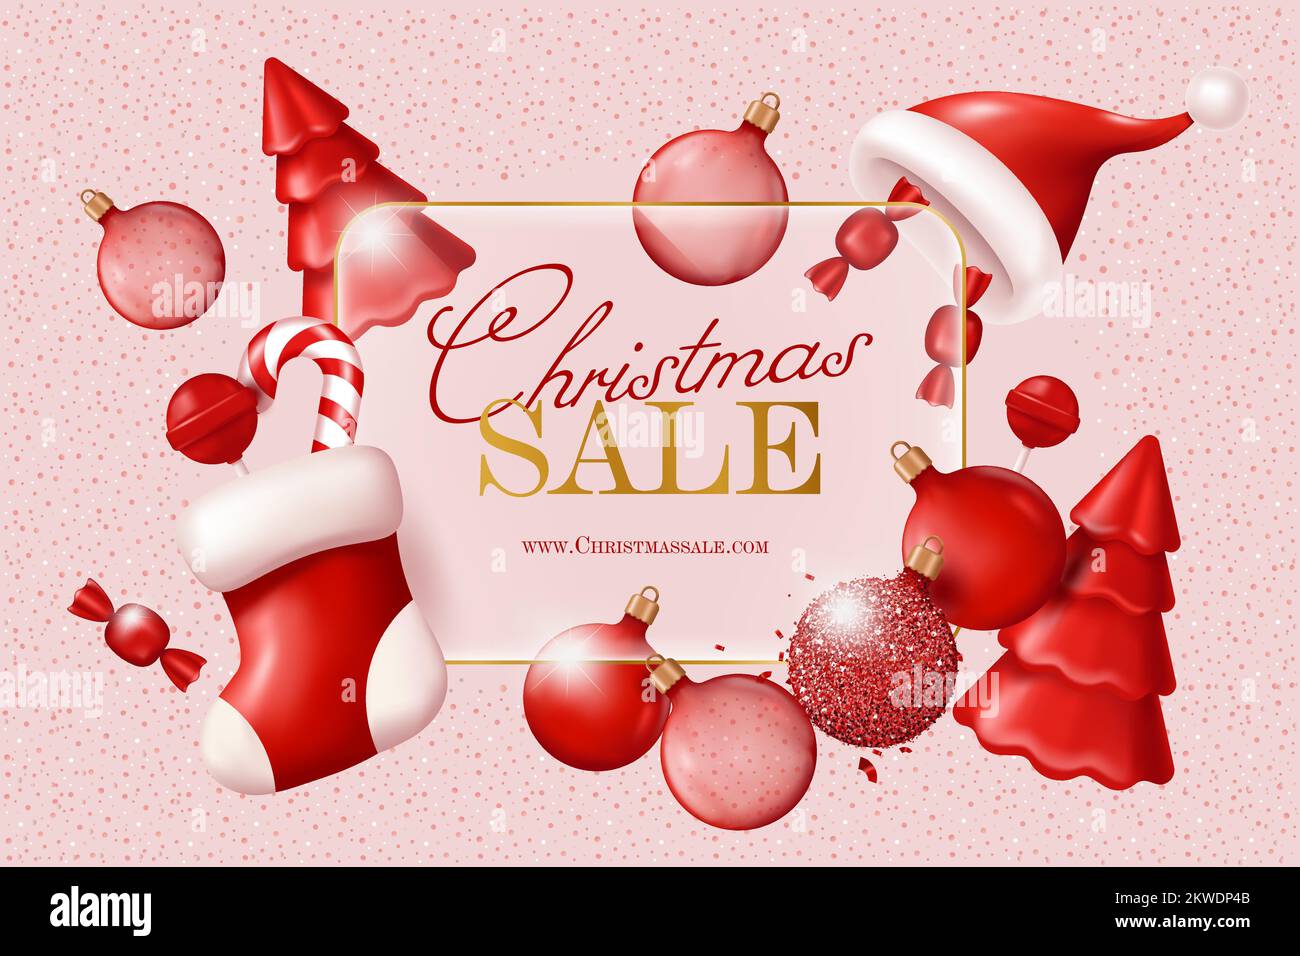 Noël solde bannière avec décorations de Noël - pin, boules de verre, bas de Noël, bonbons. Illustration vectorielle dans un style 3D réaliste Illustration de Vecteur